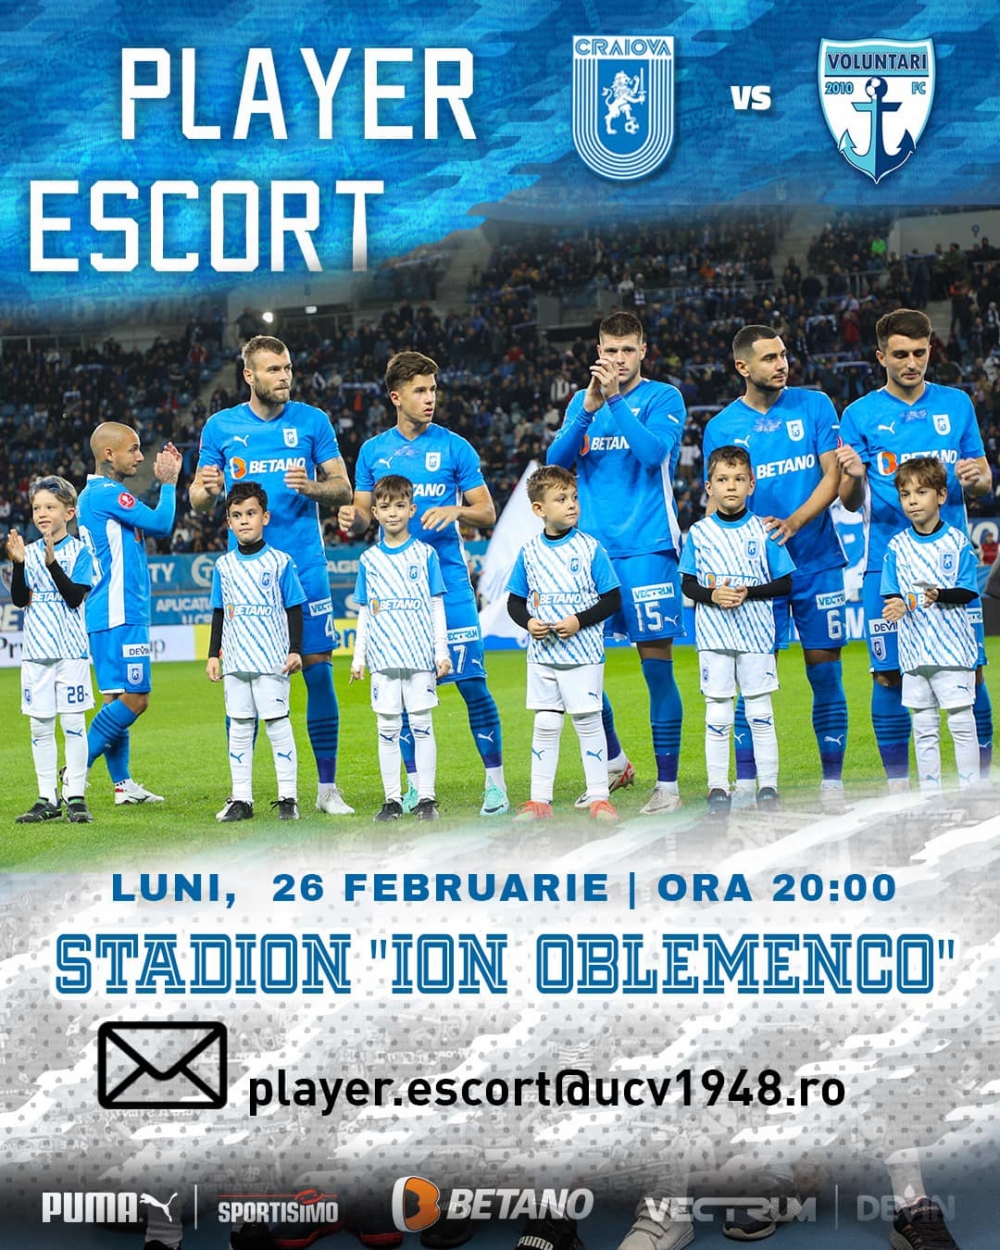 PLAYER - ESCORT | Universitatea Craiova - FC Voluntari